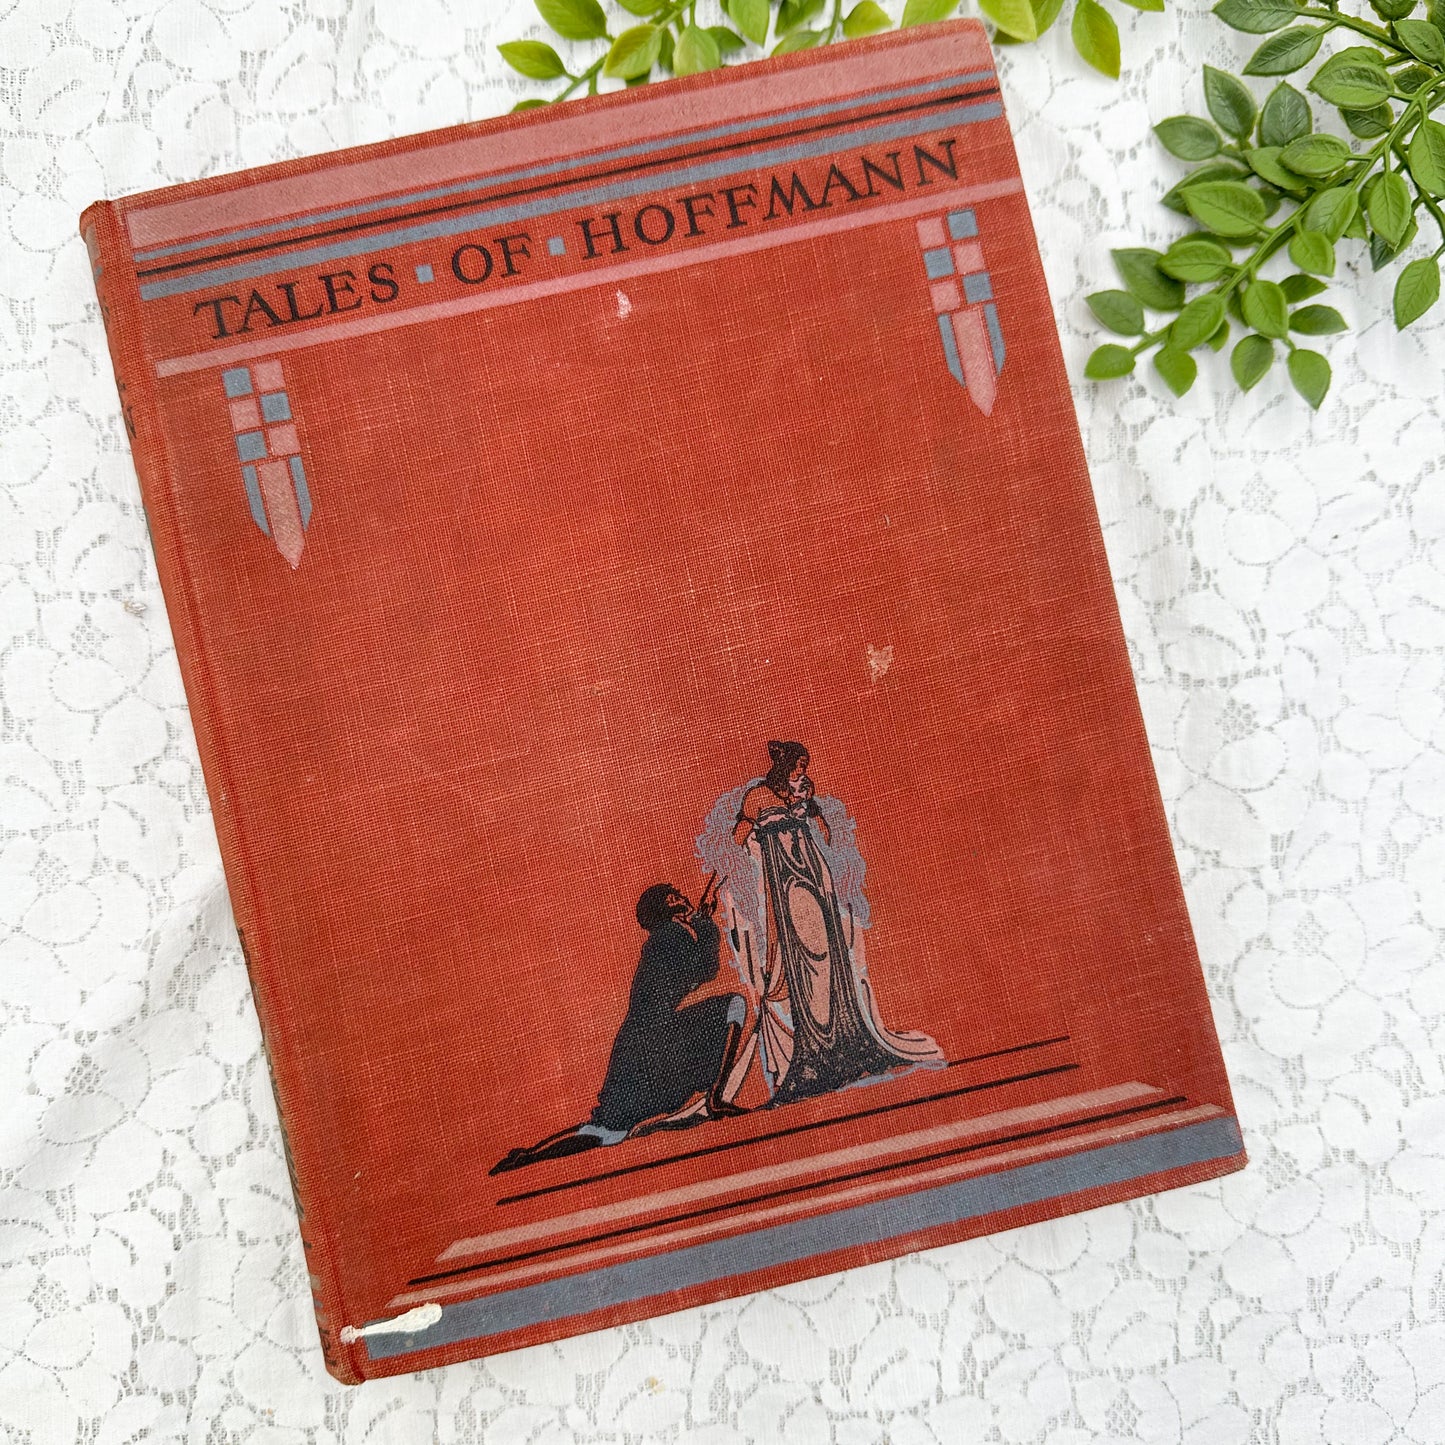 Tales of Hoffman- 1932